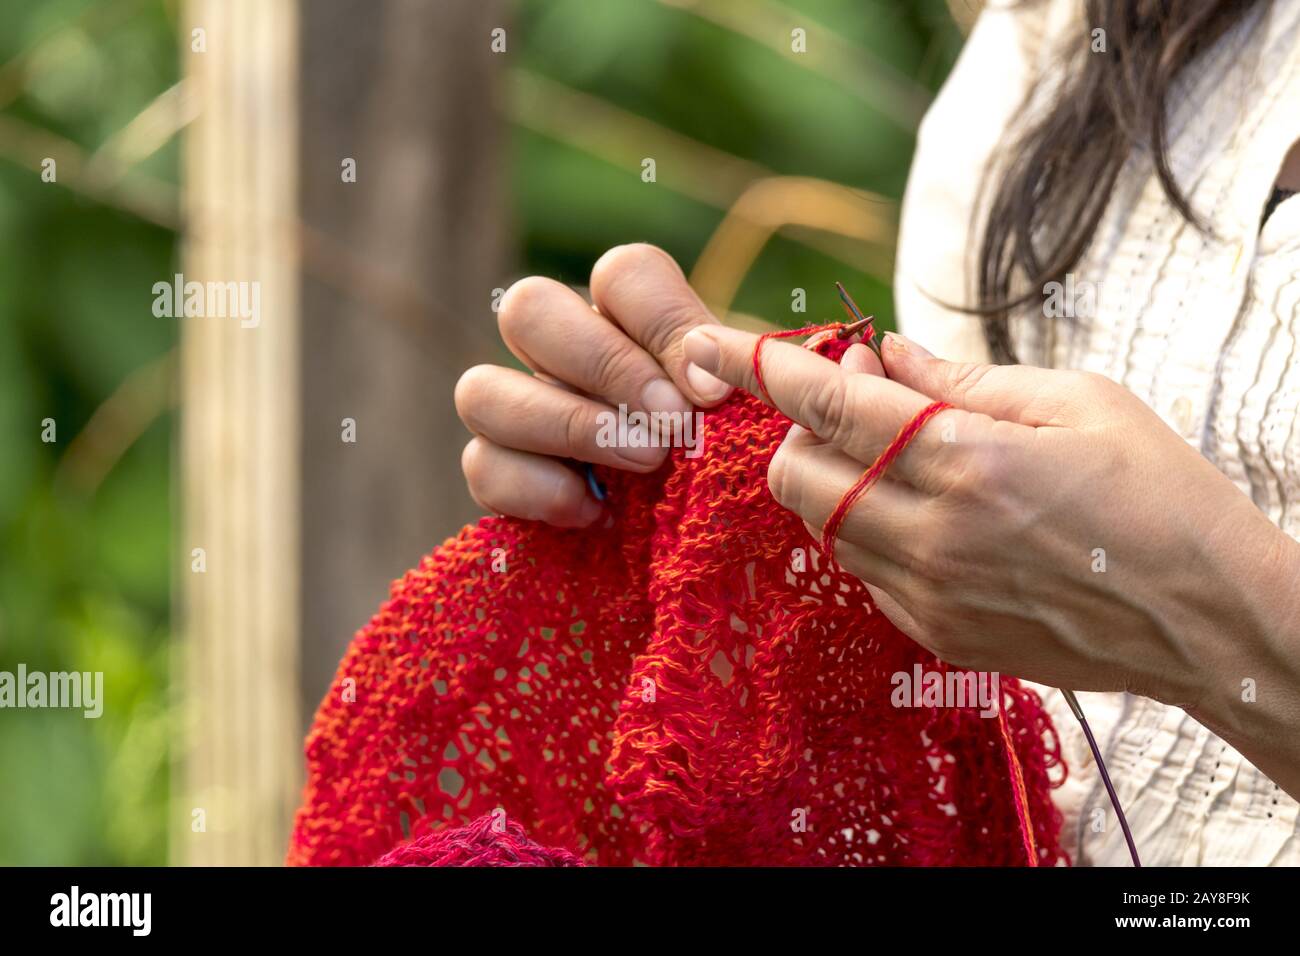 Die Hände einer Frau, die Häkelt mit roter Wolle/strickt Vor unscharfen Hintergrund Stockfoto